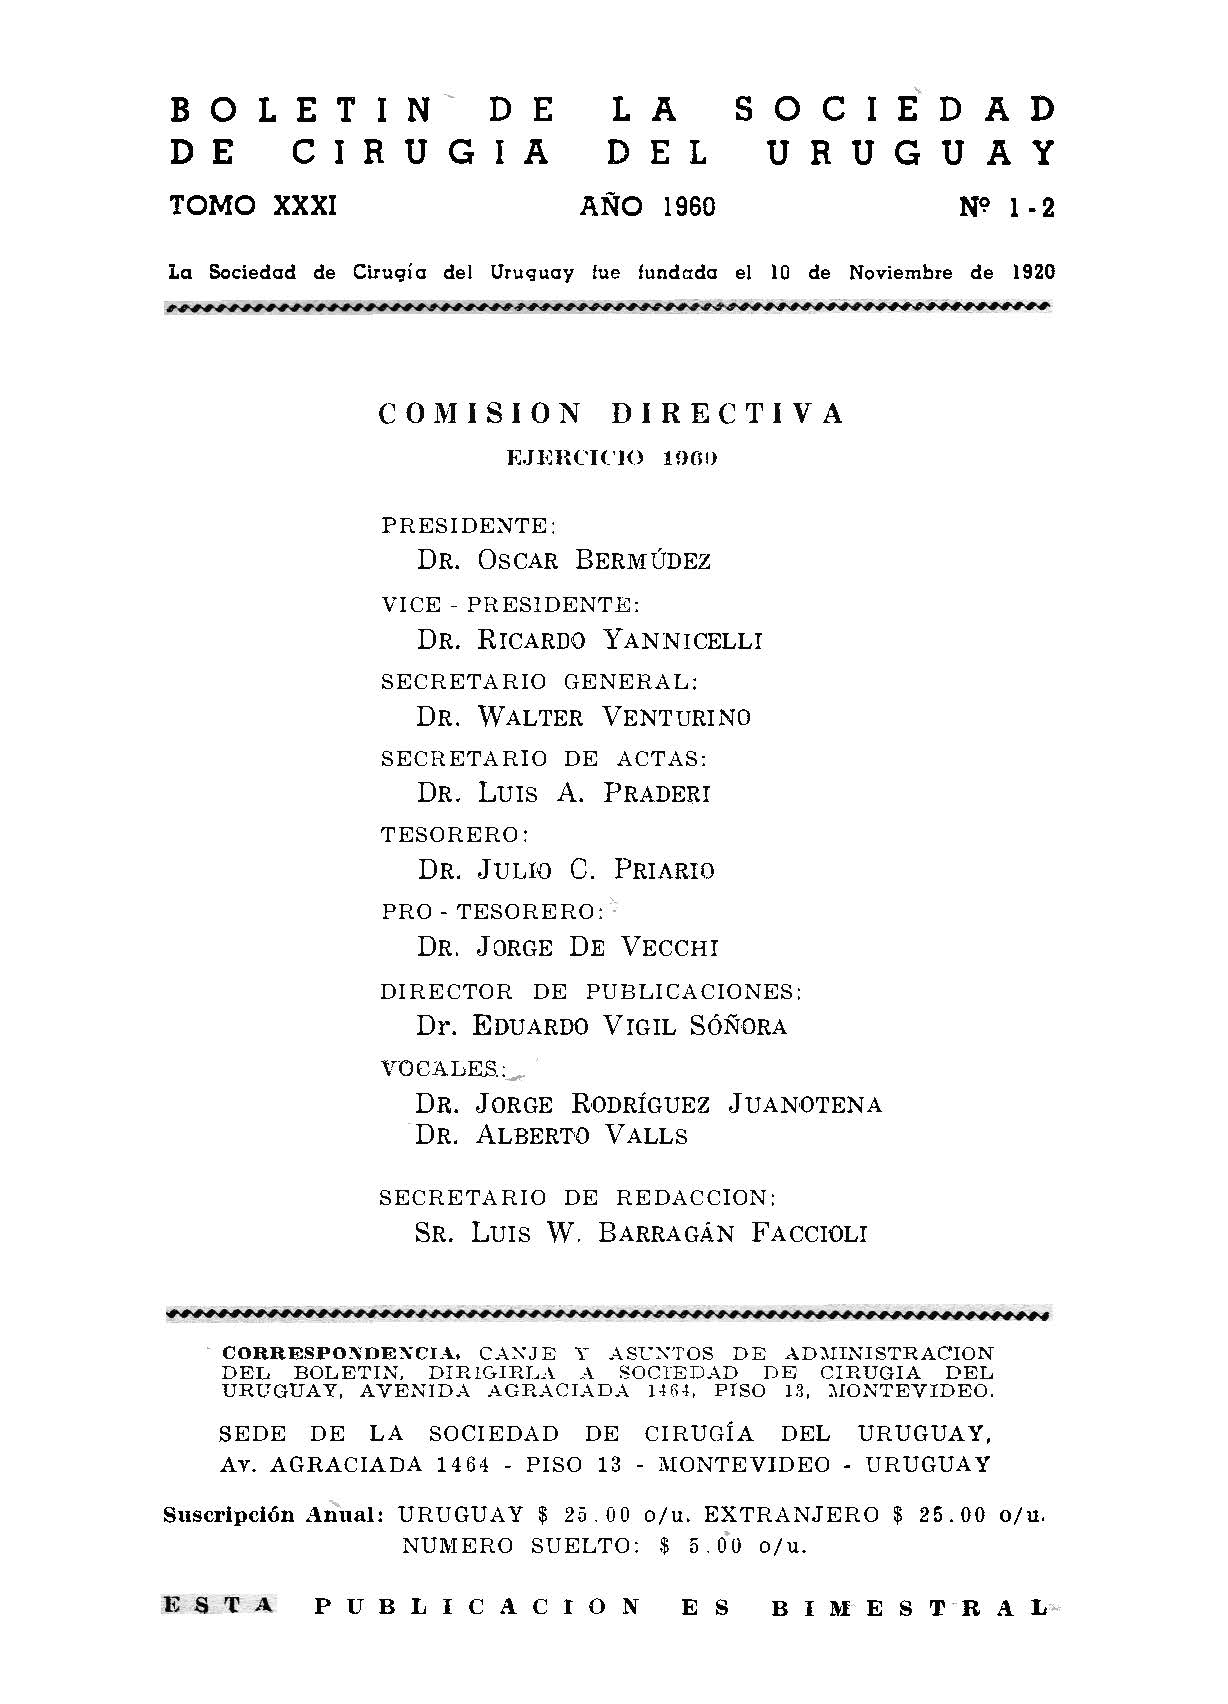 					Ver Vol. 31 Núm. 1-2 (1960): Boletín de la Sociedad de Cirugía del Uruguay
				